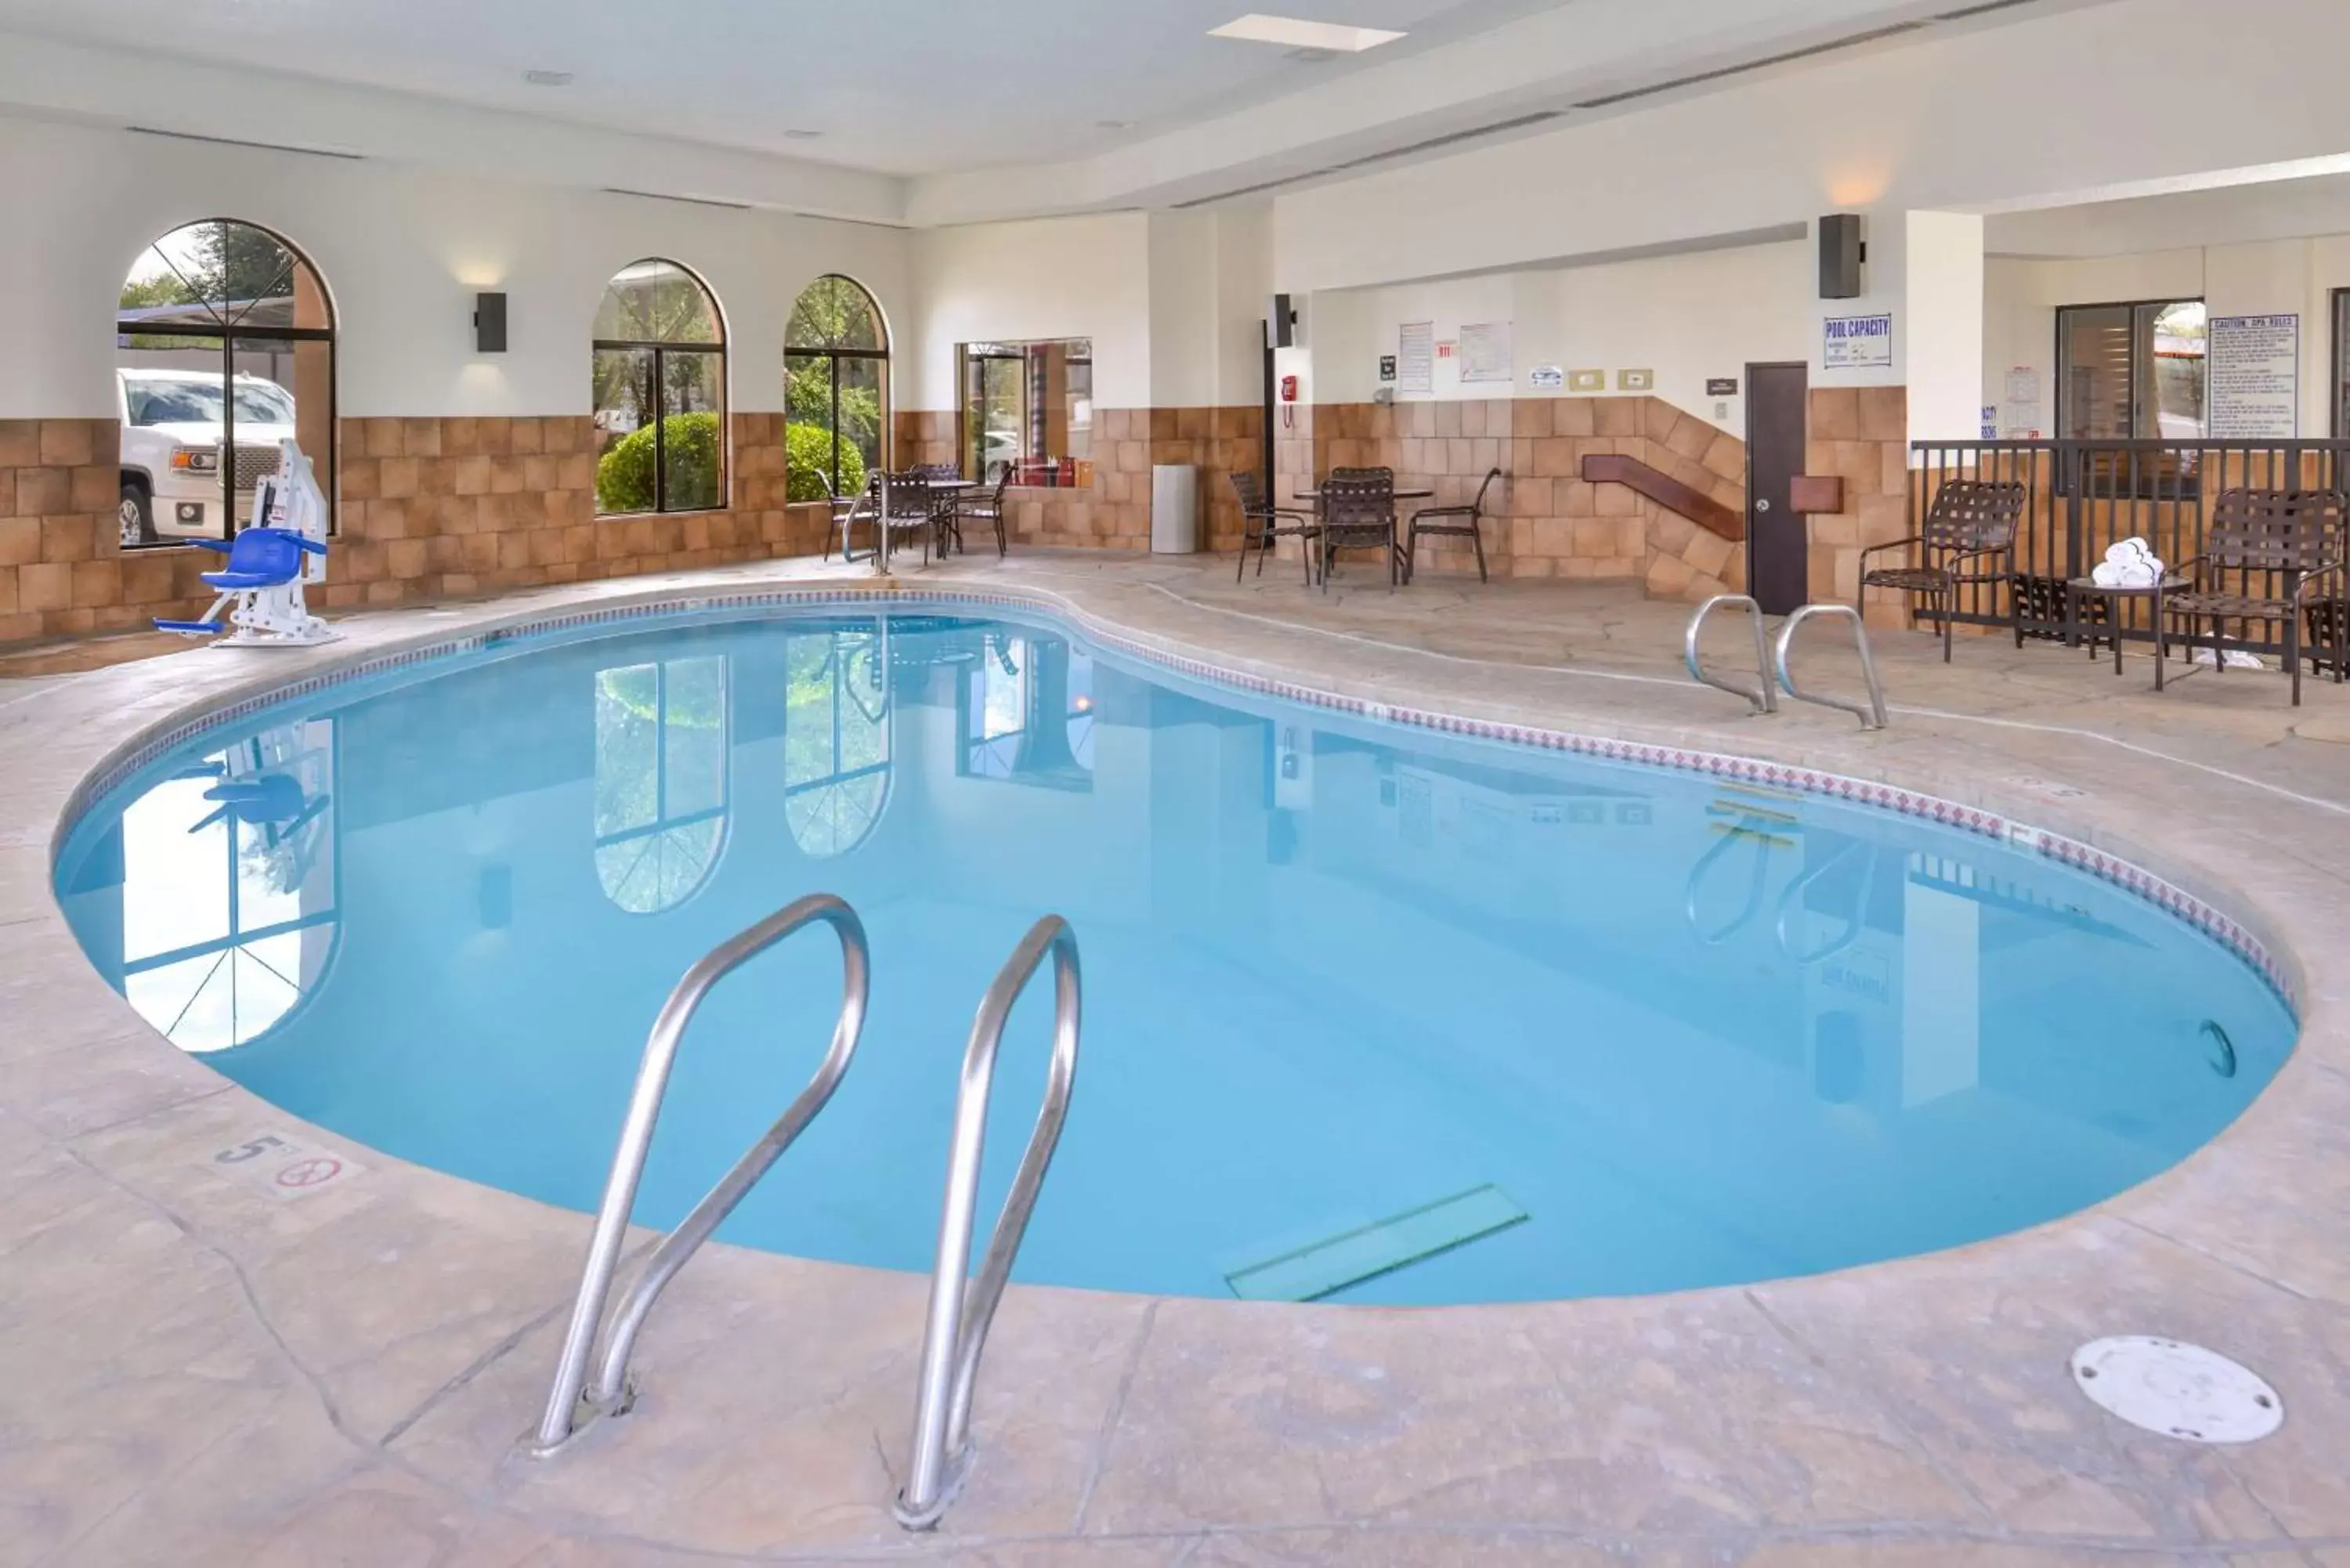 On site, Swimming Pool in Best Western Plus Inn of Santa Fe